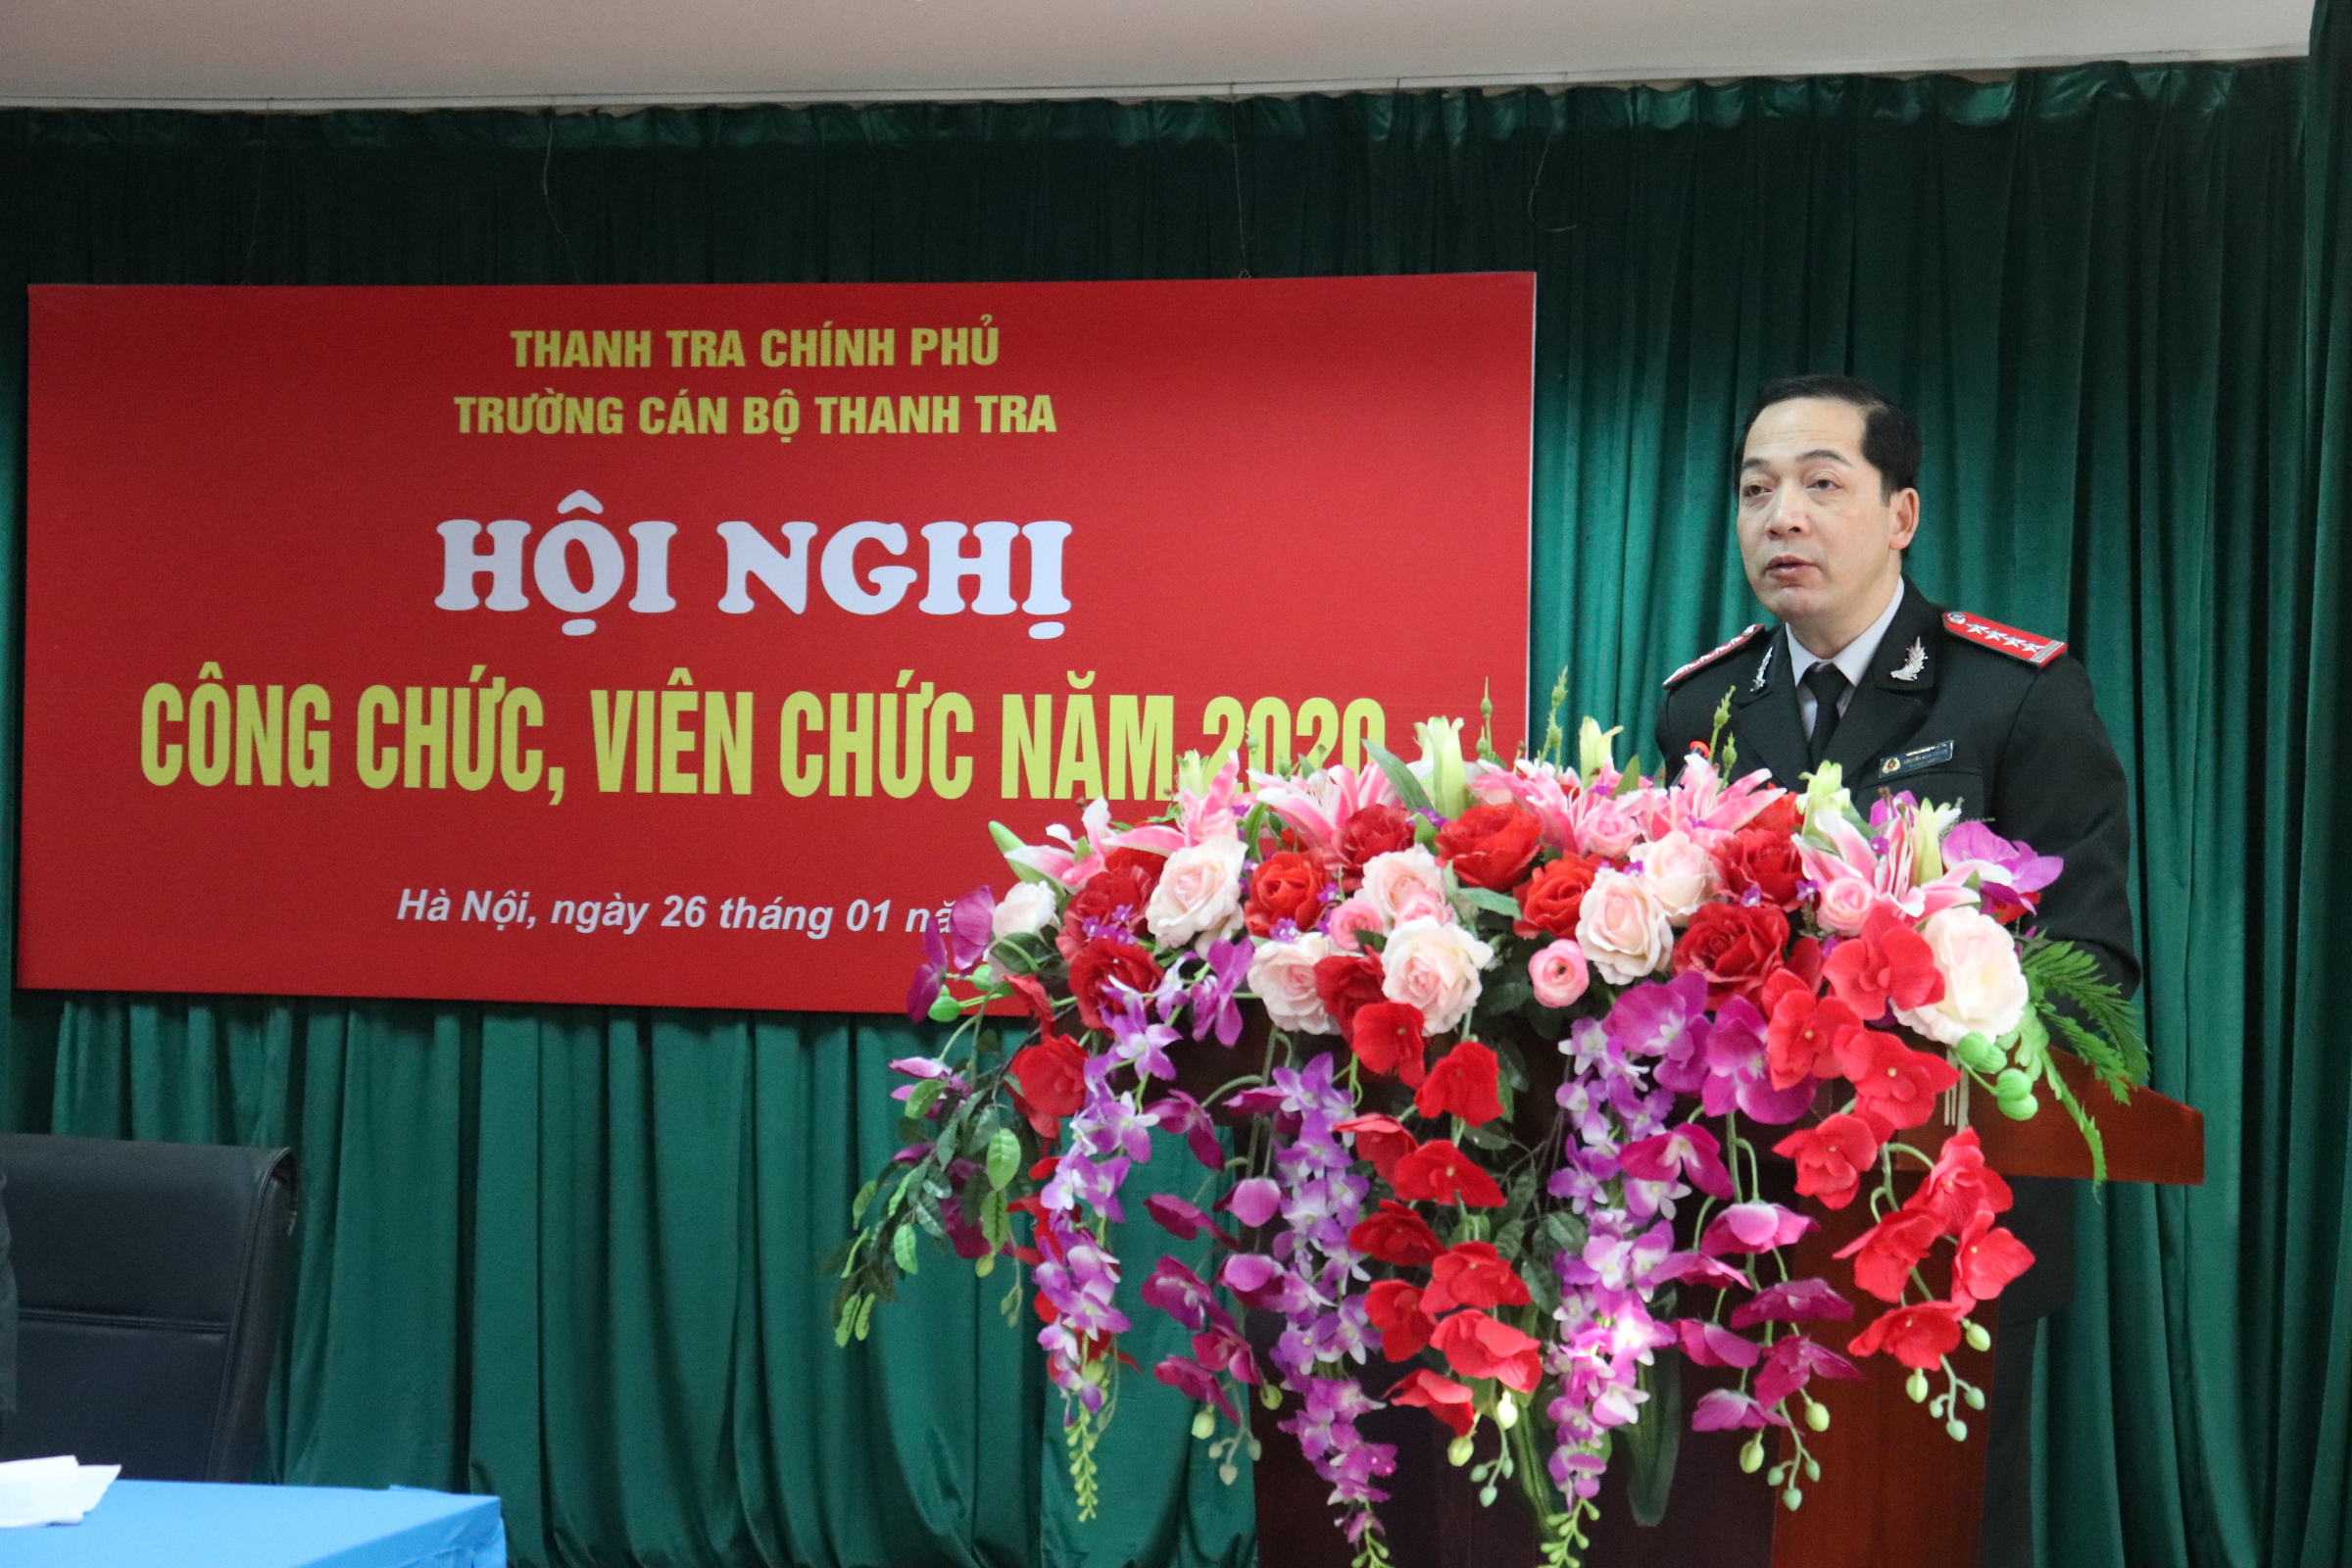 Ông Nguyễn Huy Hoàng TTVCC Phó Hiệu Trưởng nhà trg phát biểu tại Hội nghị